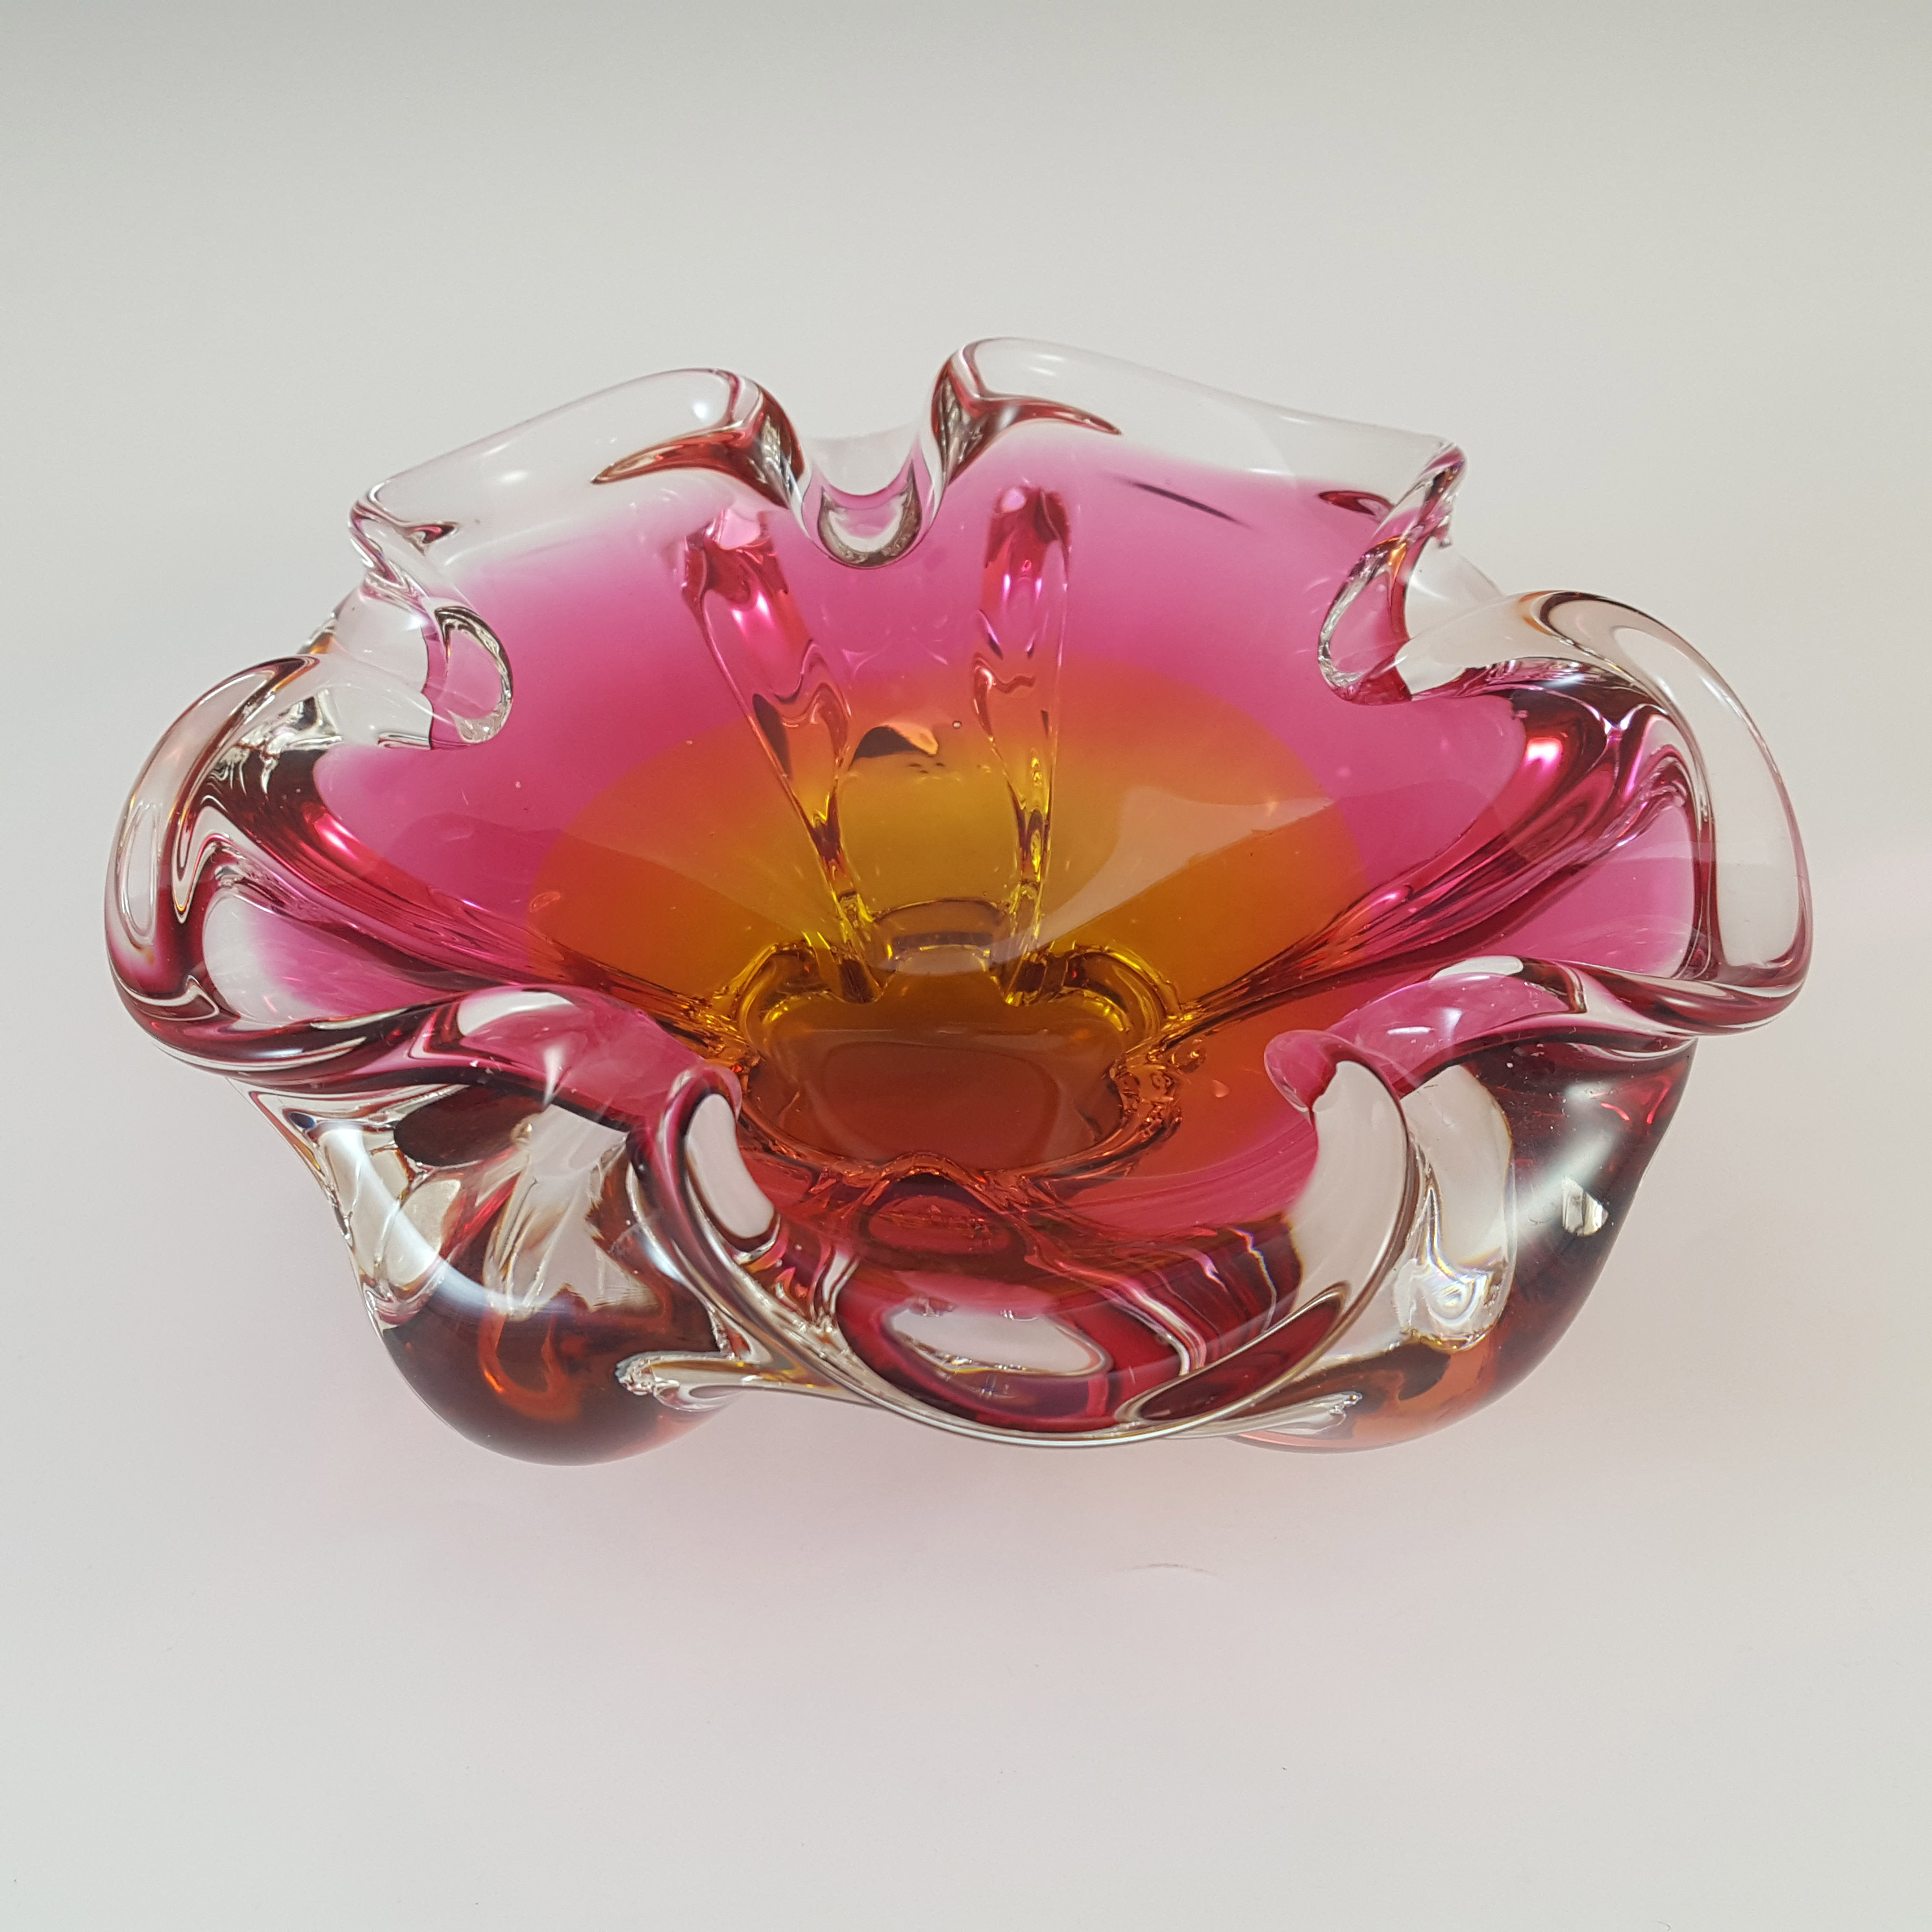 Chřibská #238/5/15 Czech Pink & Orange Glass Bowl by Josef Hospodka - Click Image to Close